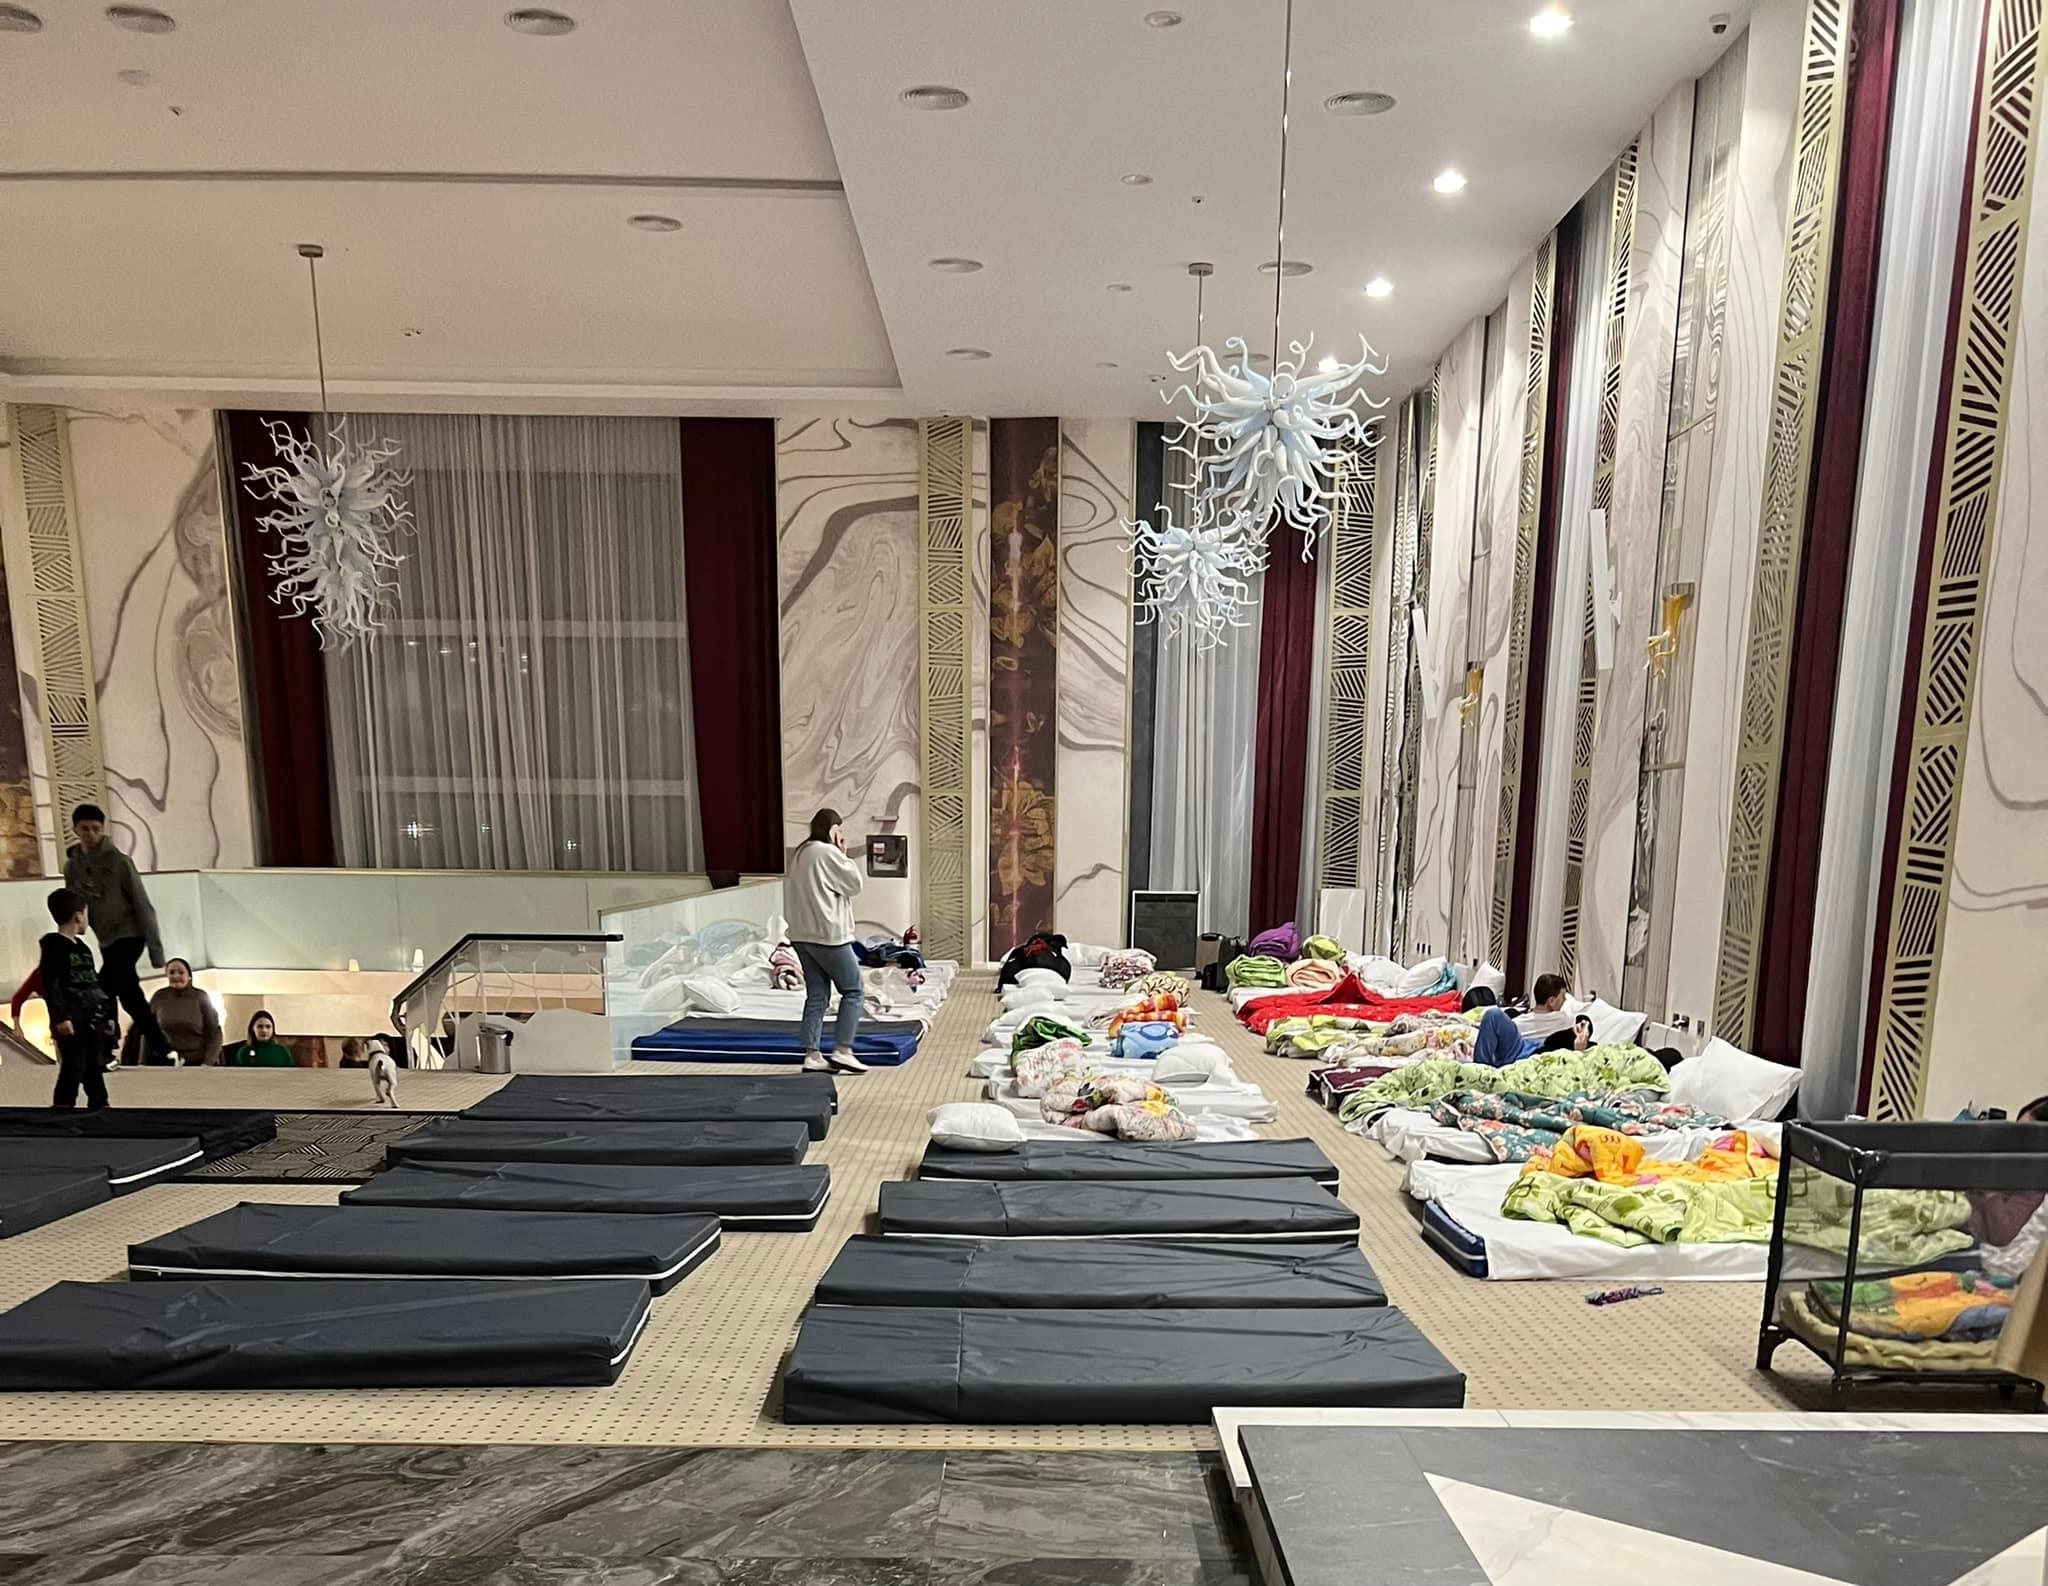  Omul de afaceri Ștefan Mandachi și-a oferit hotelul de 4 stele refugiaților ucraineni. Le asigură gratis și masa